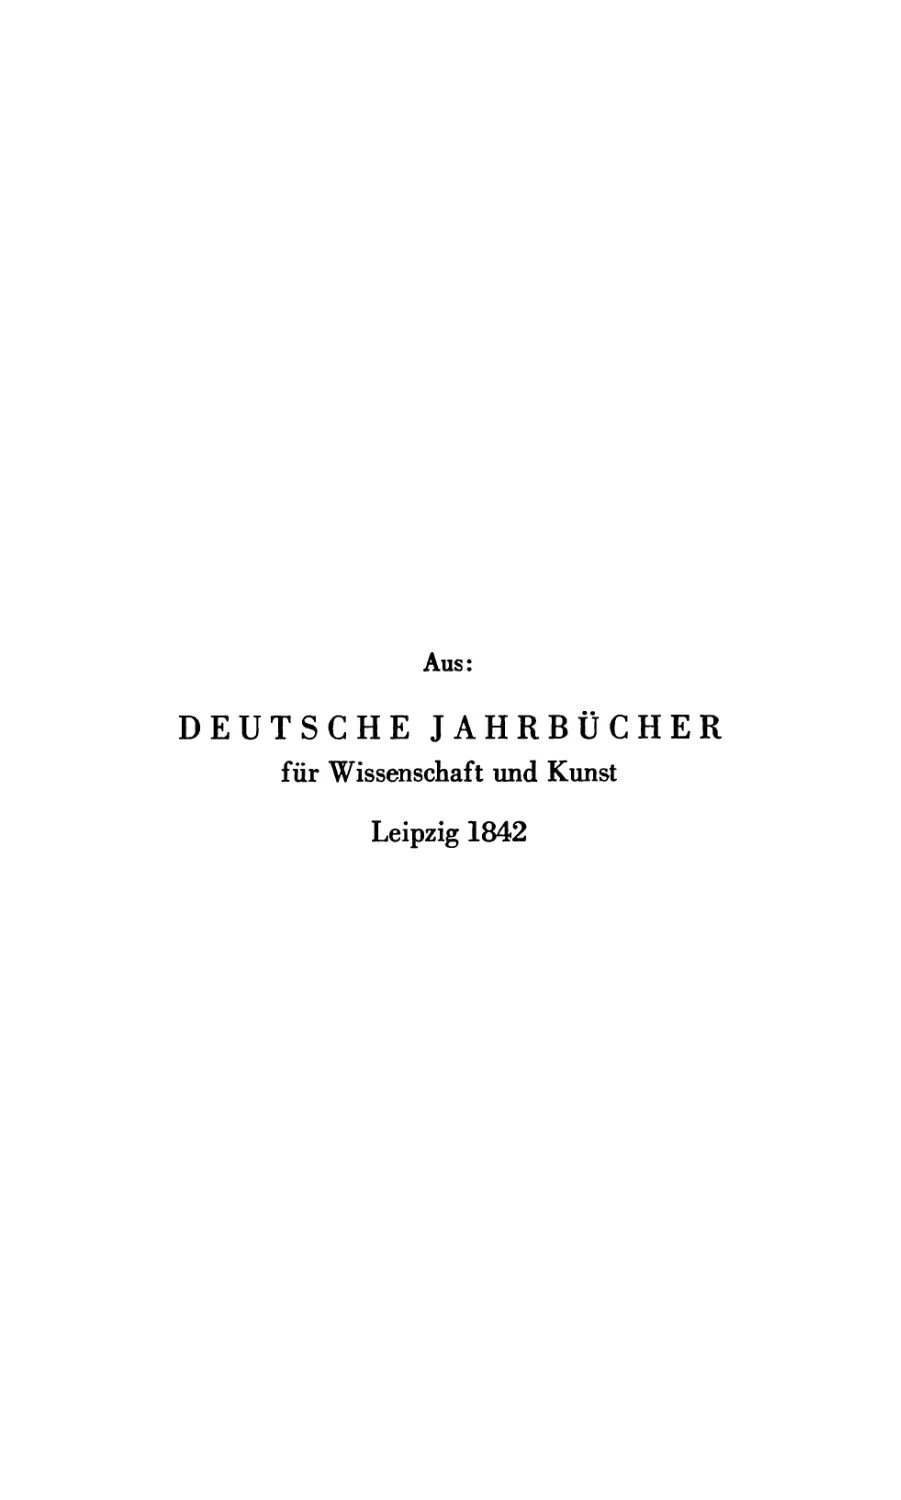 Aus: Deutsche Jahrbücher für Wissenschaft und Kunst